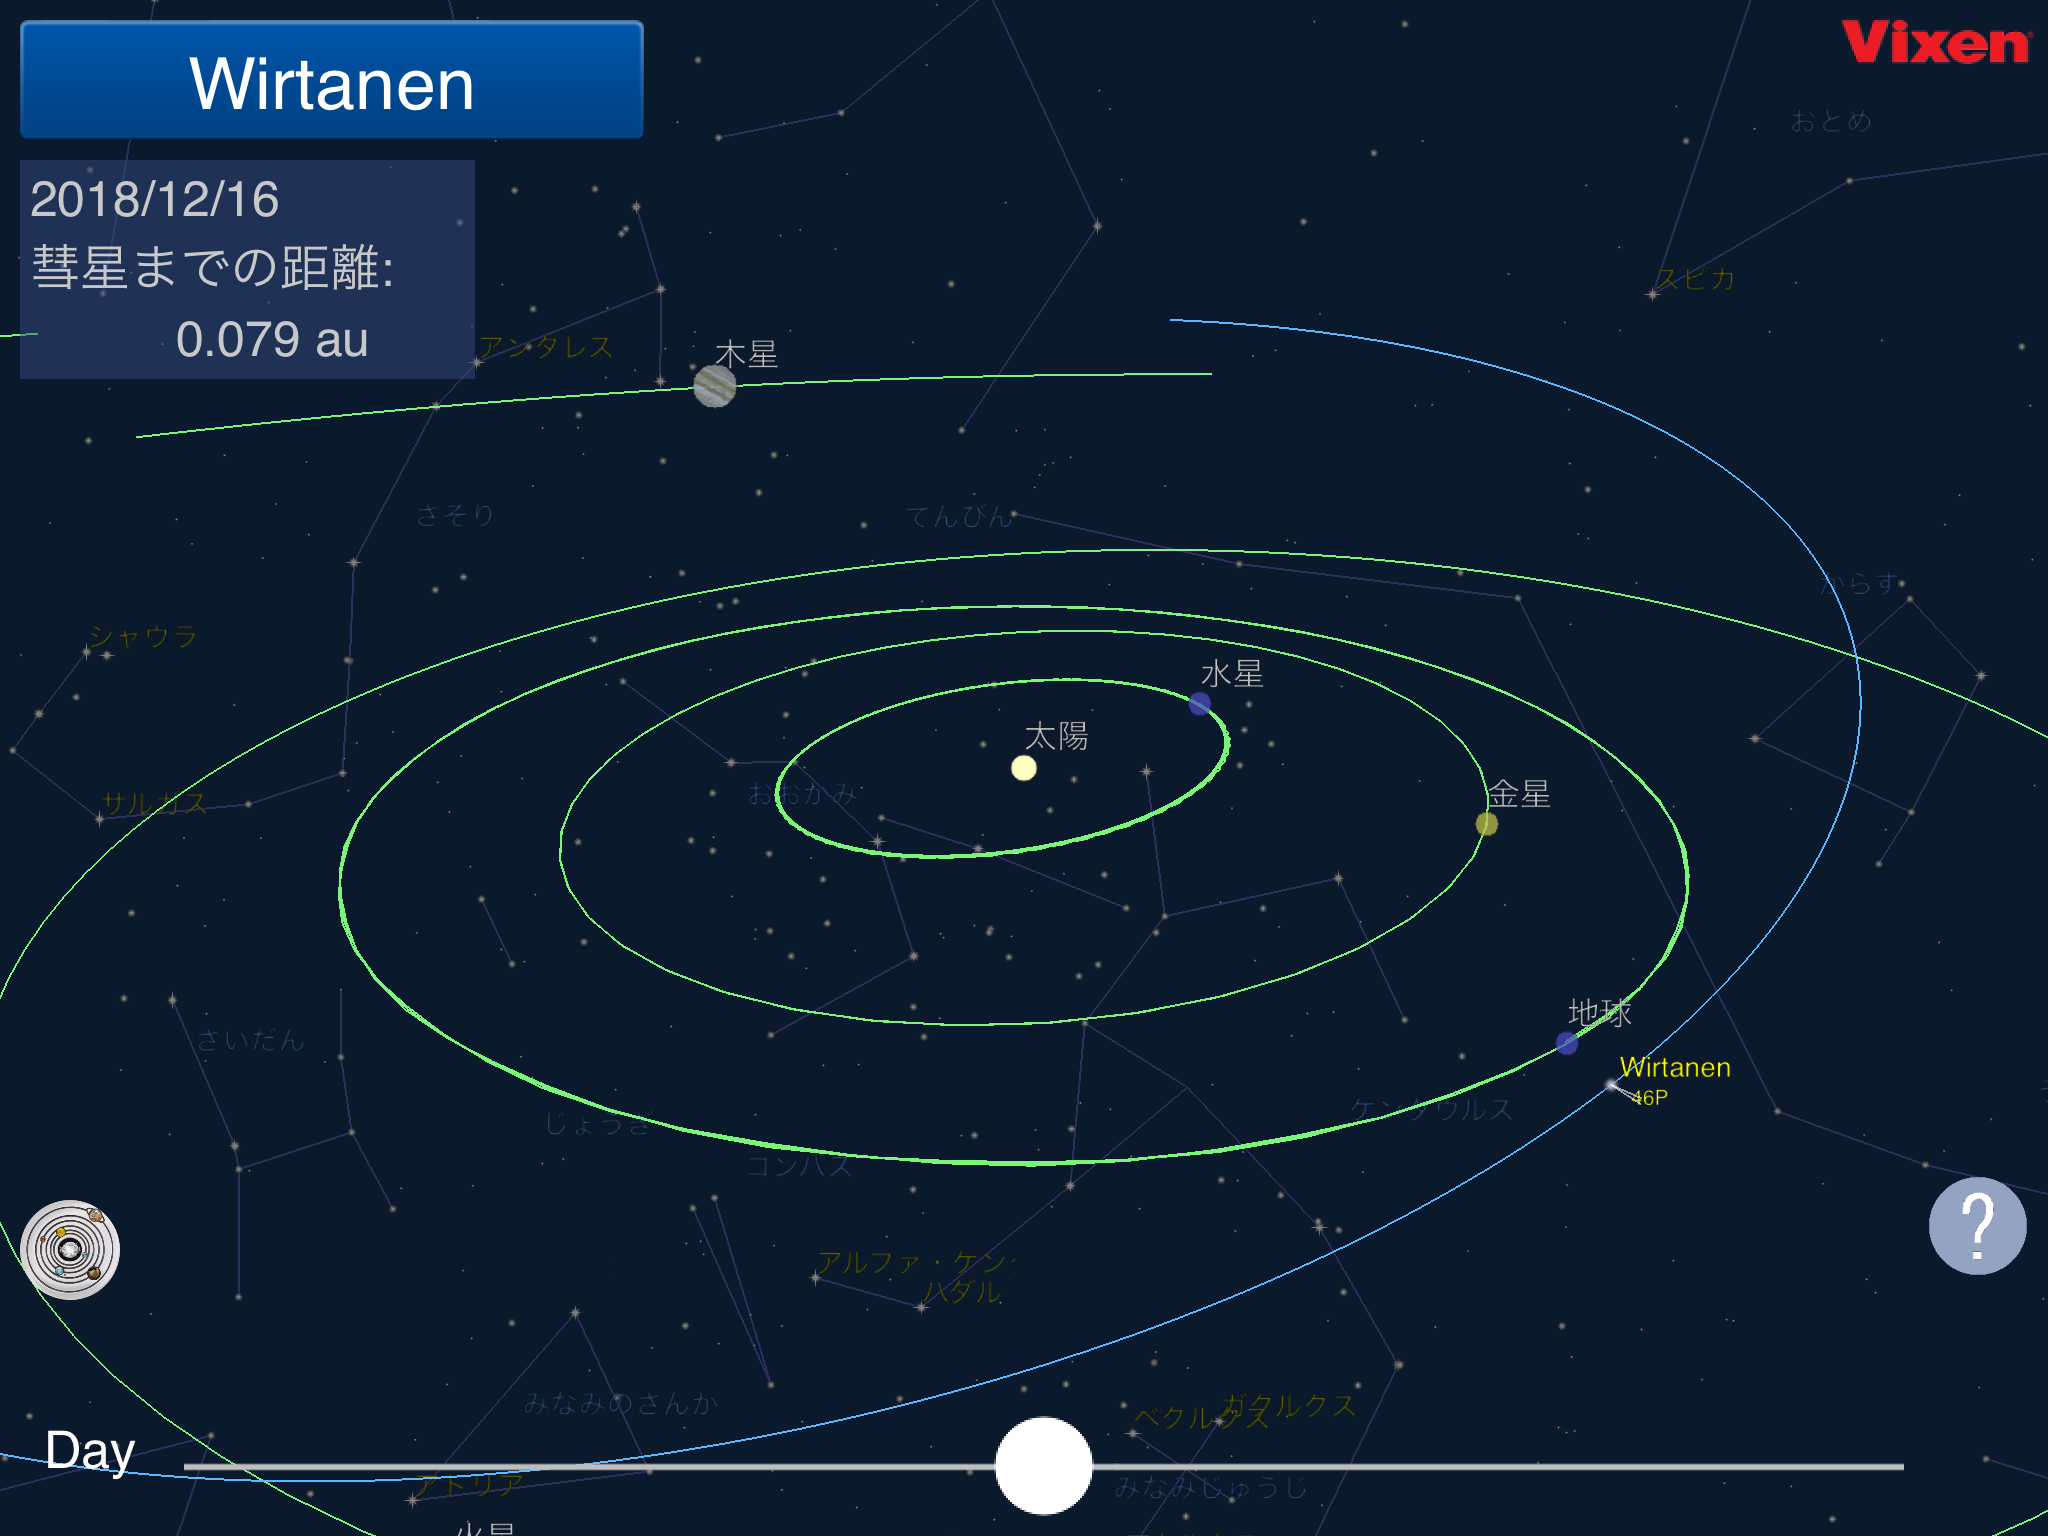 Comet Book アプリのアップデートを3月末に予定 宇宙視点モード の追加で 地球と彗星の位置関係がよりわかりやすく ビクセン Vixen